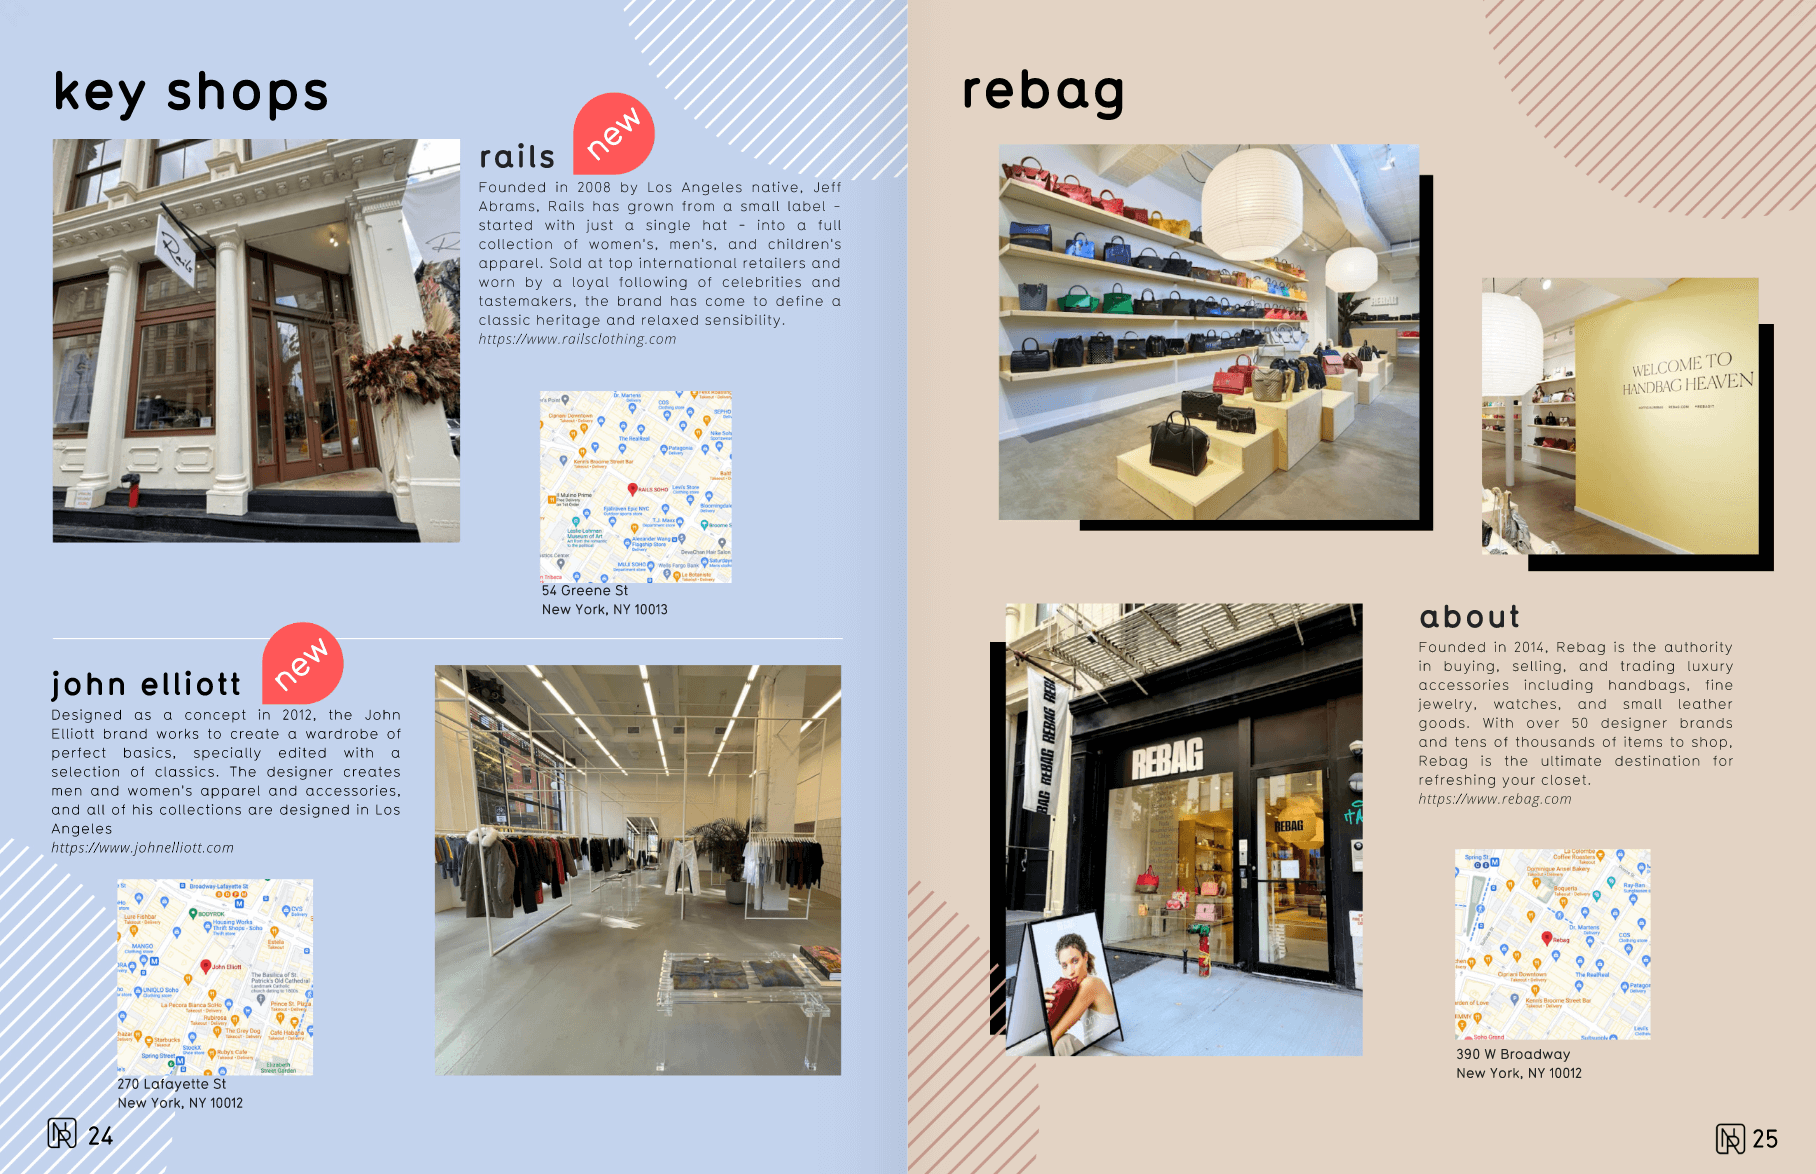 Rails, Rebag et John elliott - New-York Retail Guide